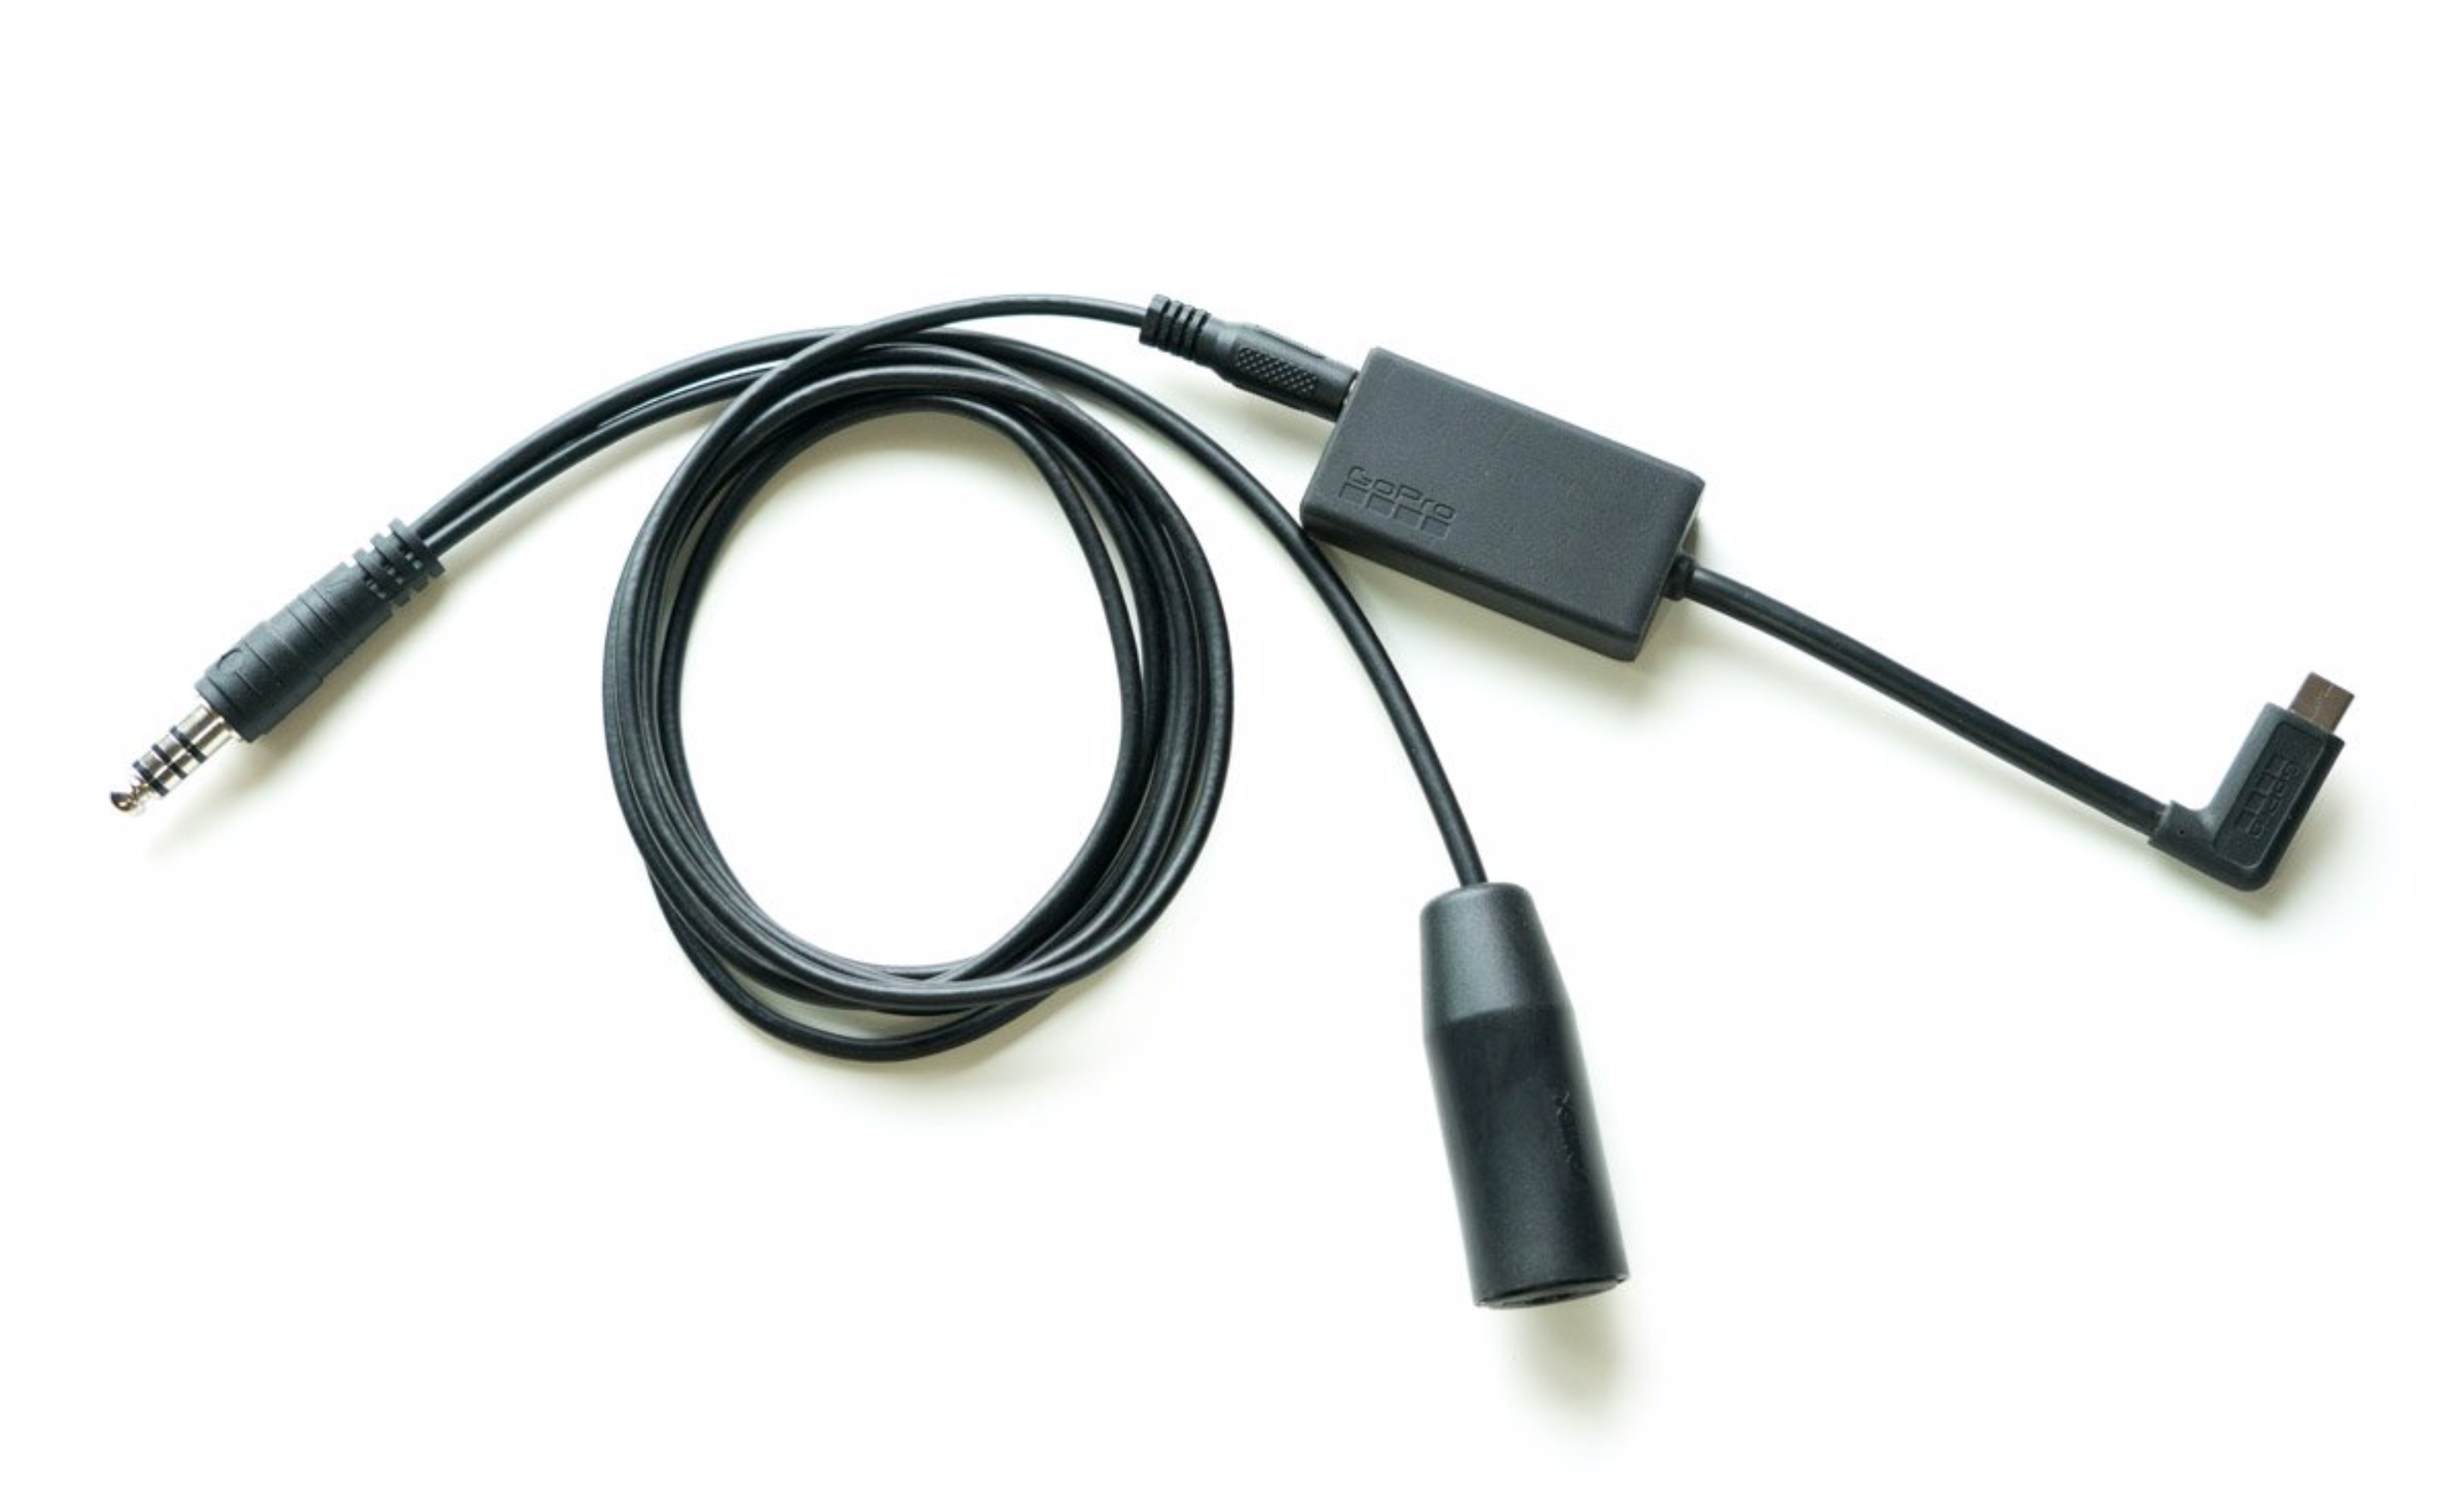 Microphone pour GoPro Hero 3, 3 et 4 avec connexion MINI USB